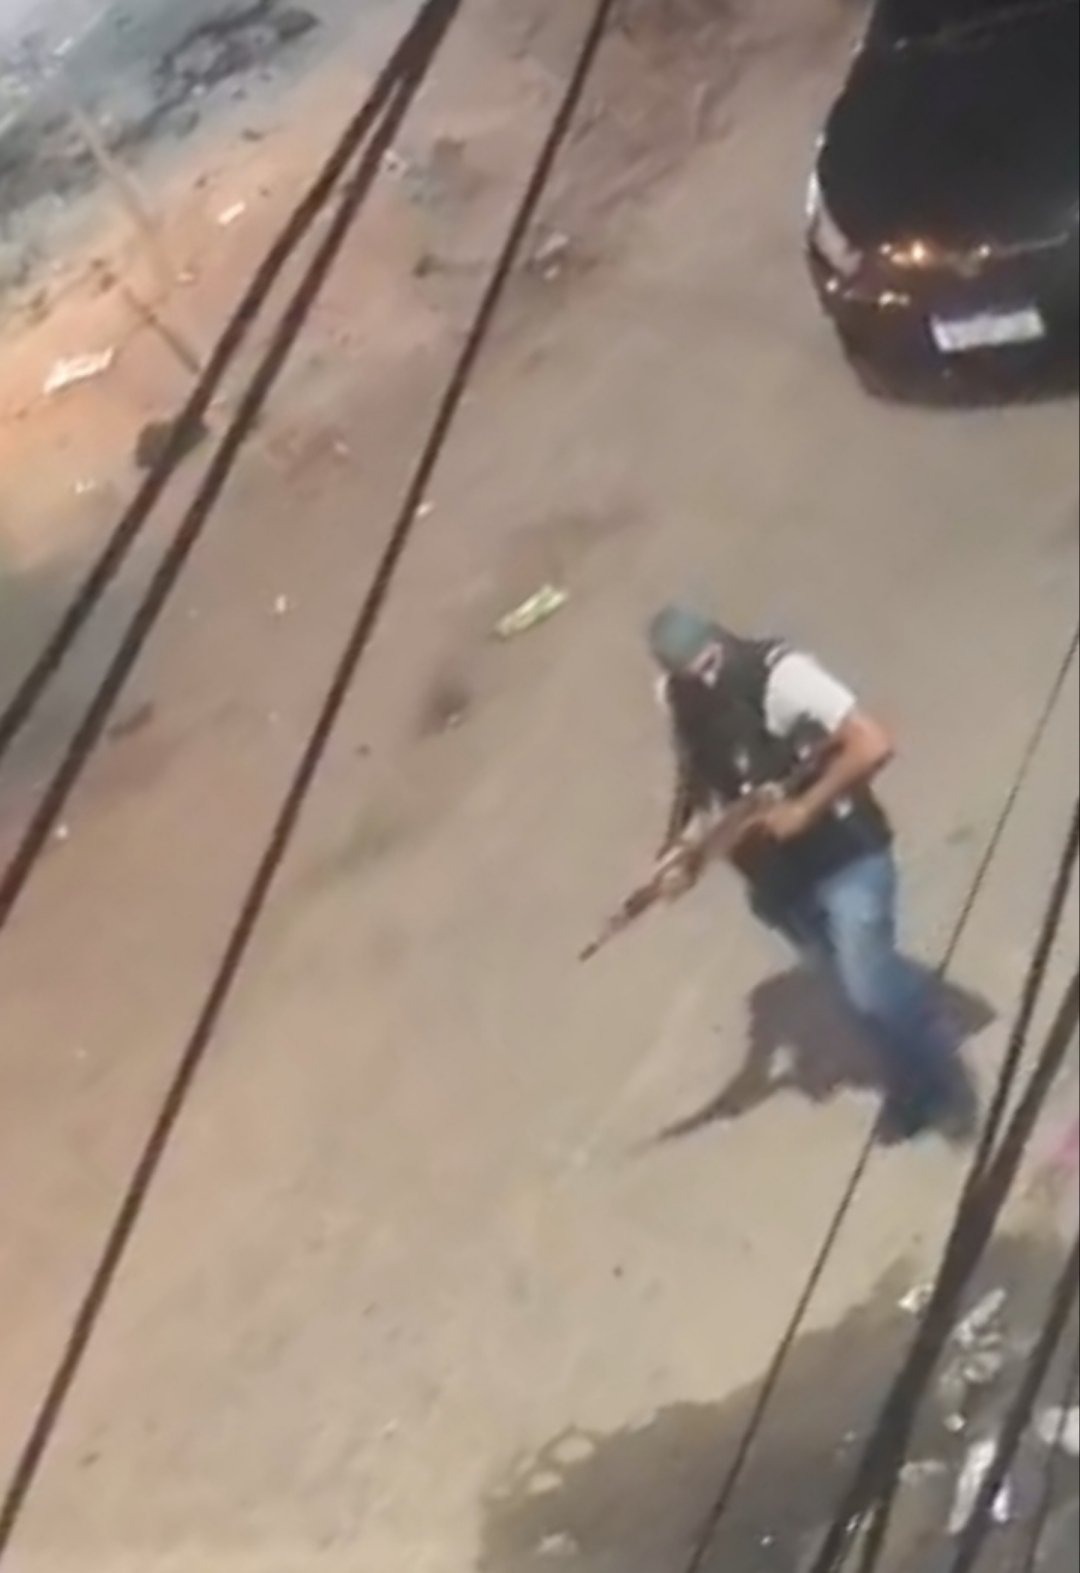 Guerra entre milicianos e aterroriza moradores de bairro da Zona Oeste do Rio (Foto: Divulgação)